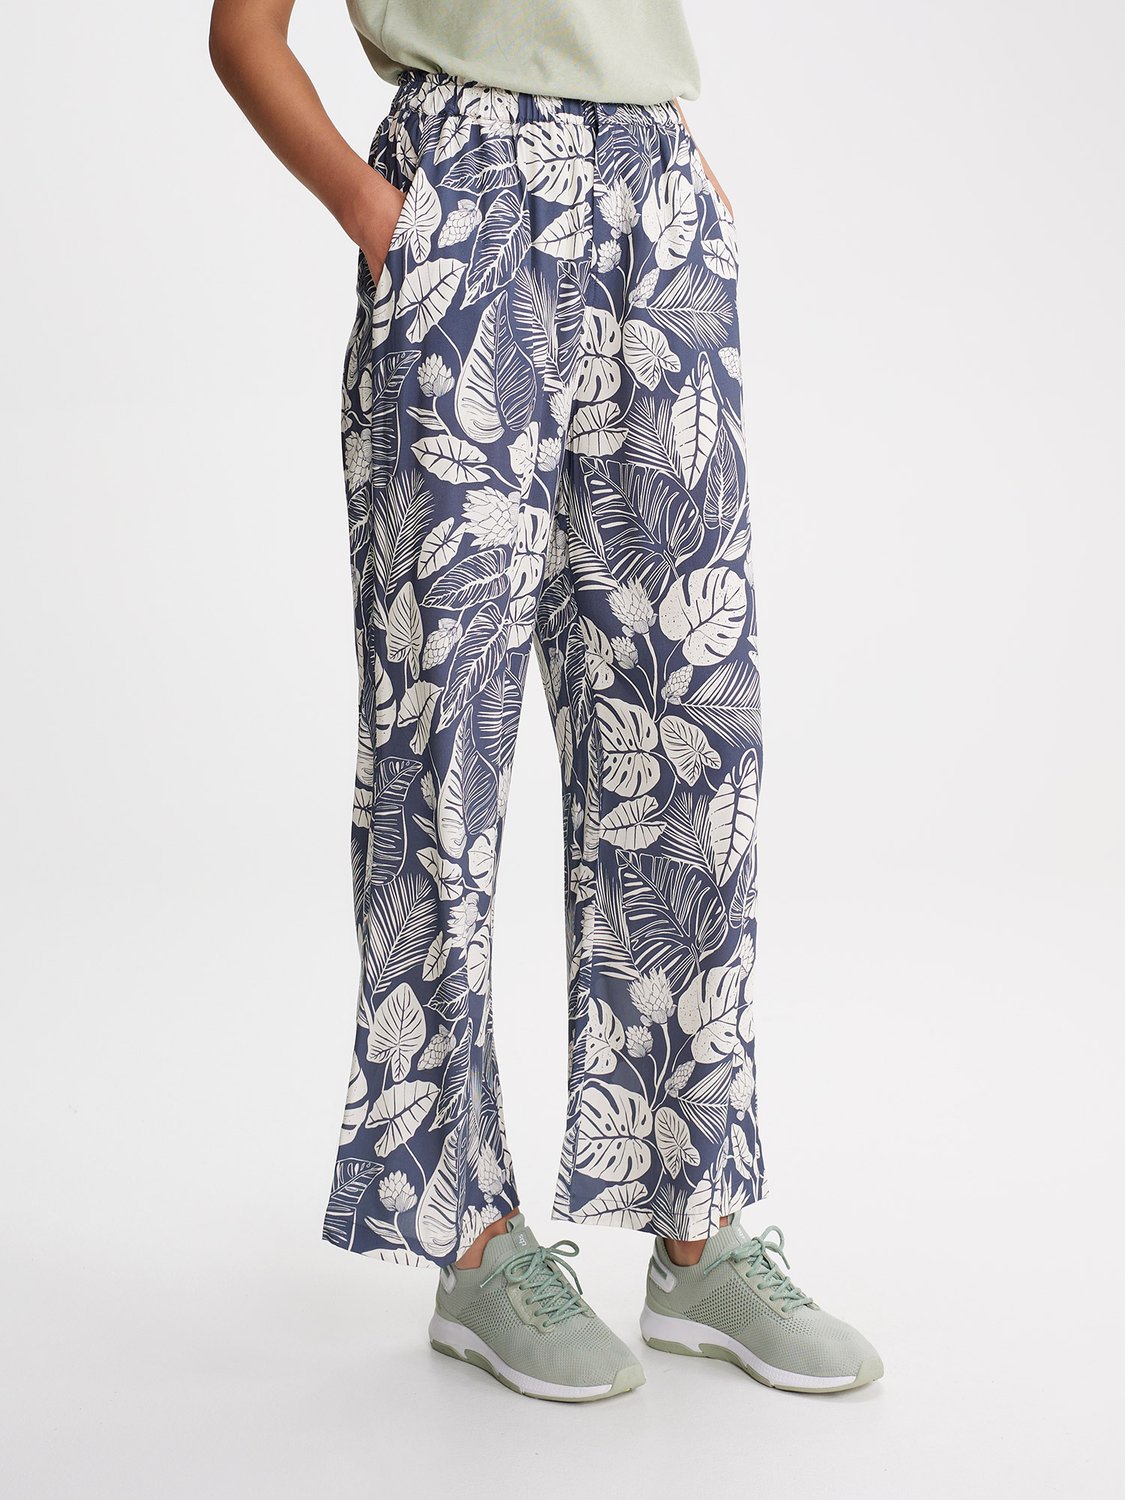 Pantalon Femme Taille Elastiquée Motif Floral Bleu